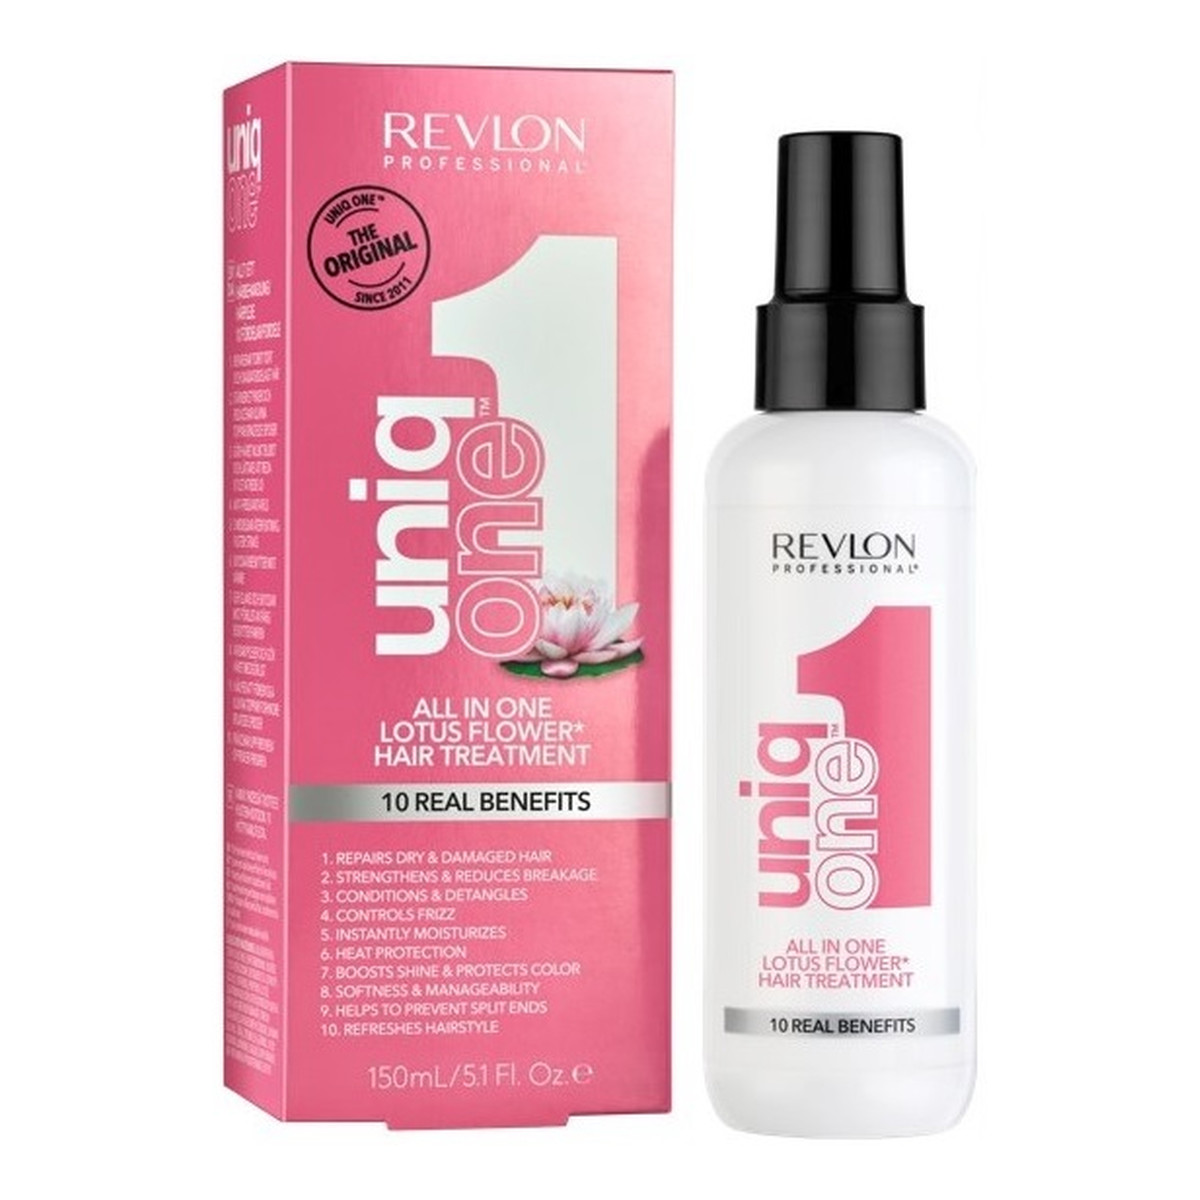 Revlon Uniq One All In One Lotus Flower Hair Treatment 10 Real Benefits maska do włosów w sprayu 150ml